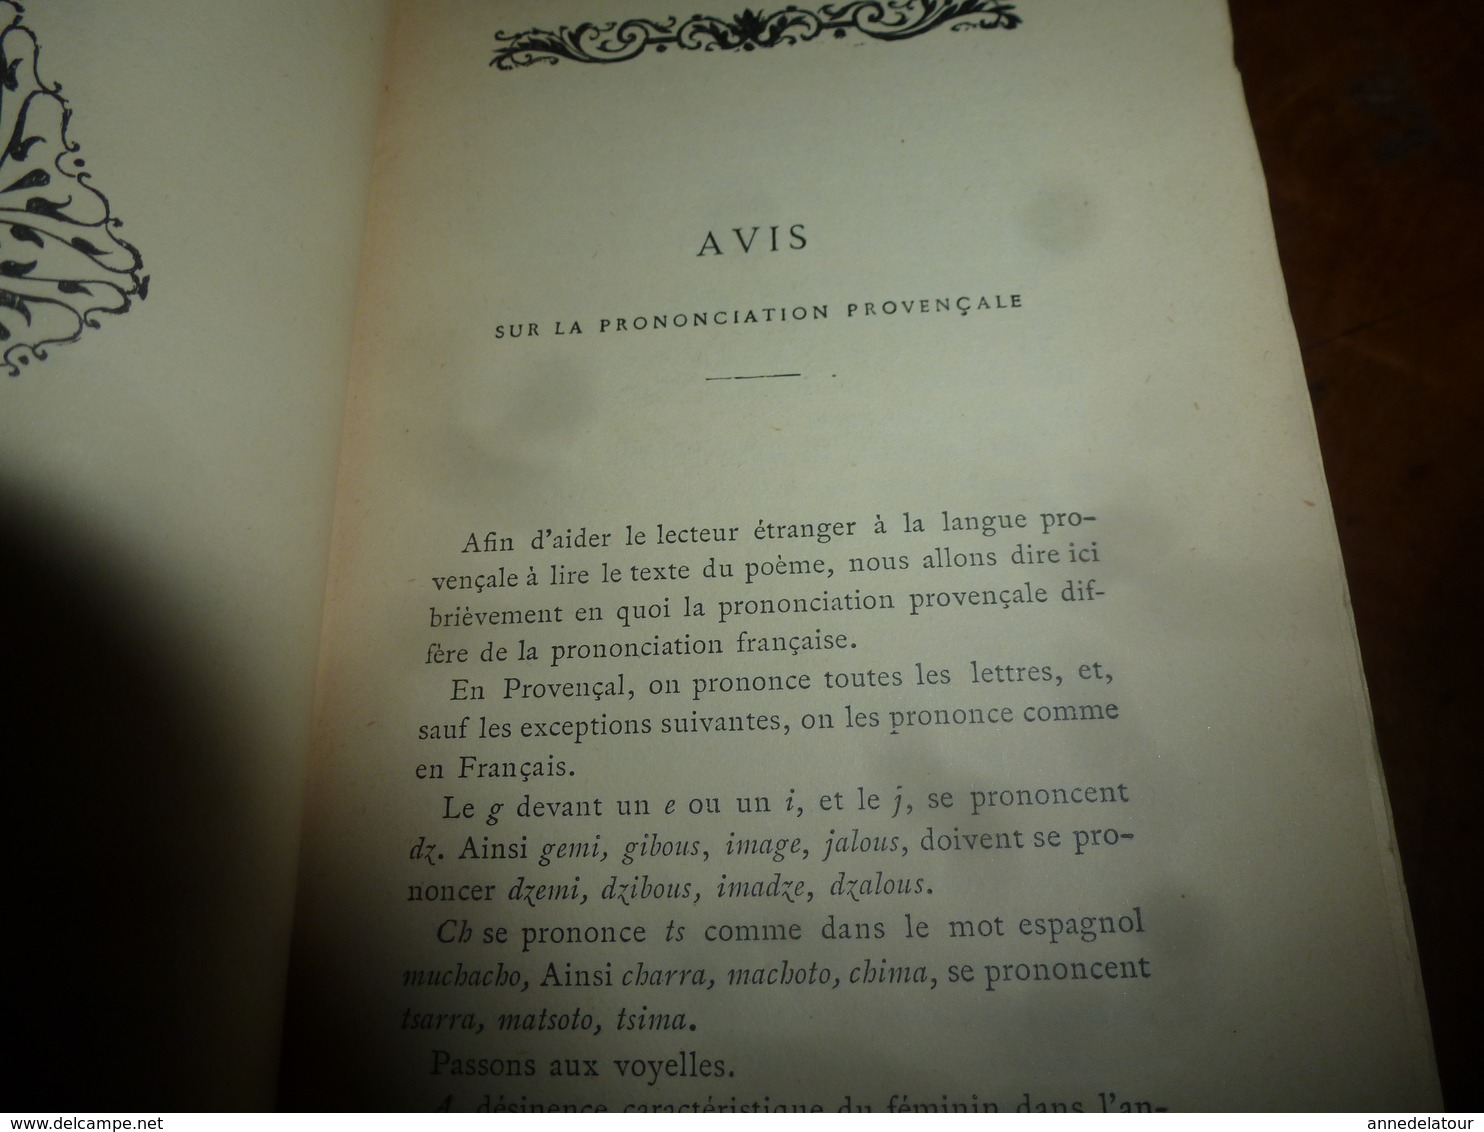 1936 Œuvres de FRÉDÉRIC MISTRAL "Mireille" Poème provençal avec traduction littérale en regard; "Magali" , etc